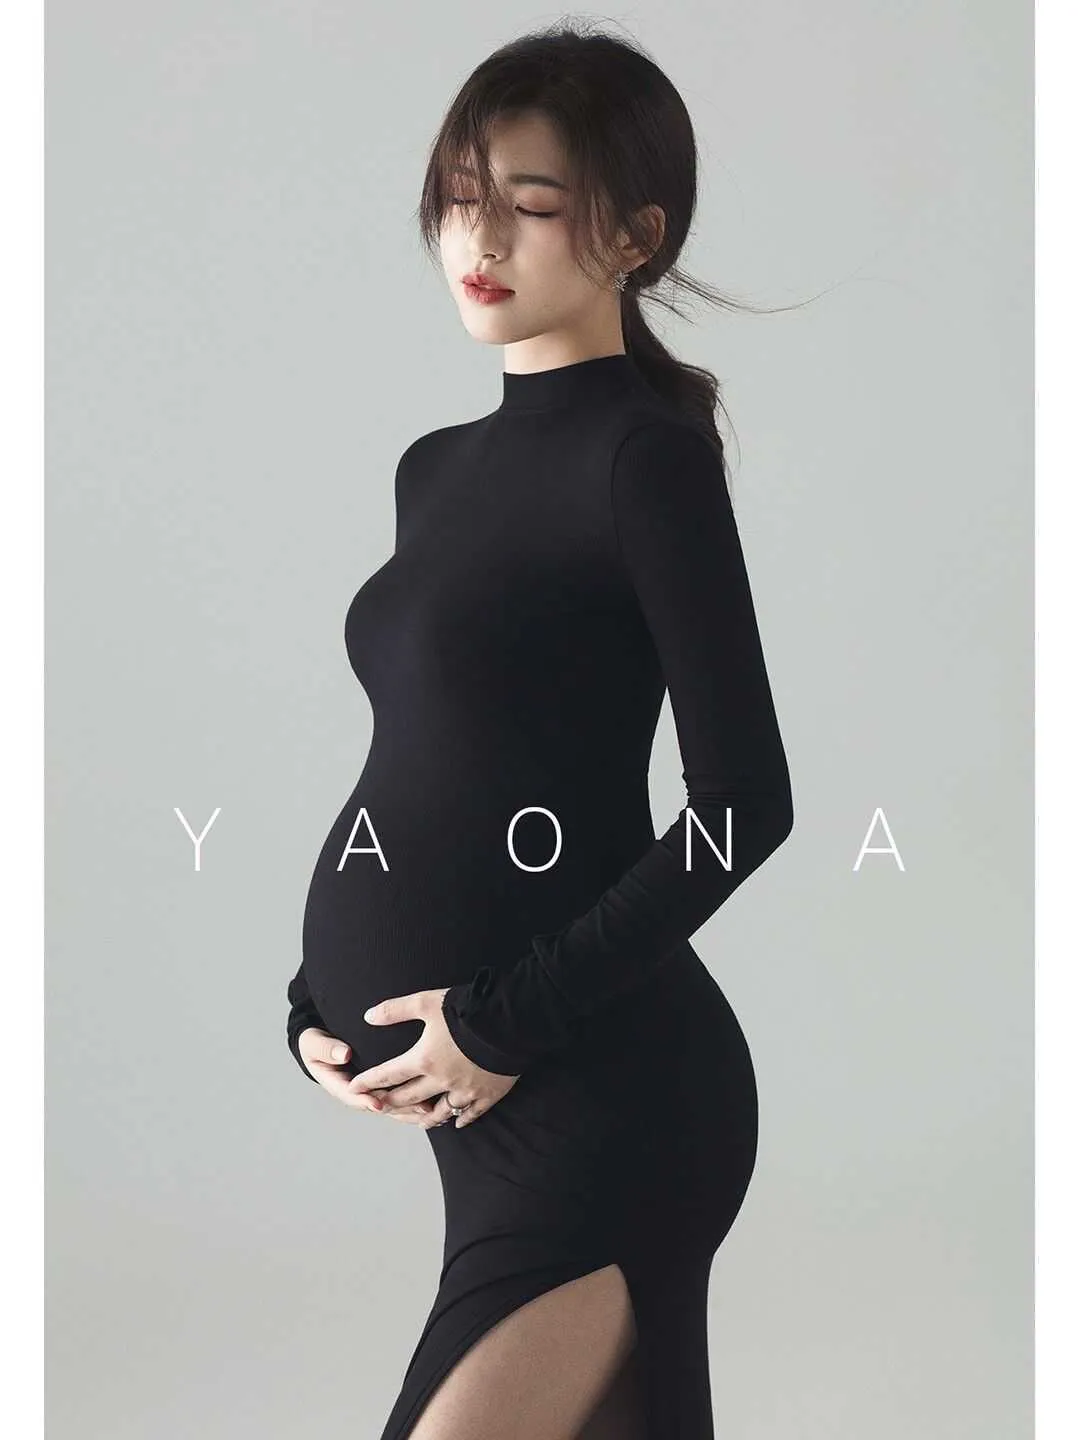 جديدة سوداء مثير فساتين الأمومة التصوير الفوتوغرافي مقسمة الجانب الطويل الحمل ملابس الصور لالتقاط الصور للنساء الحوامل